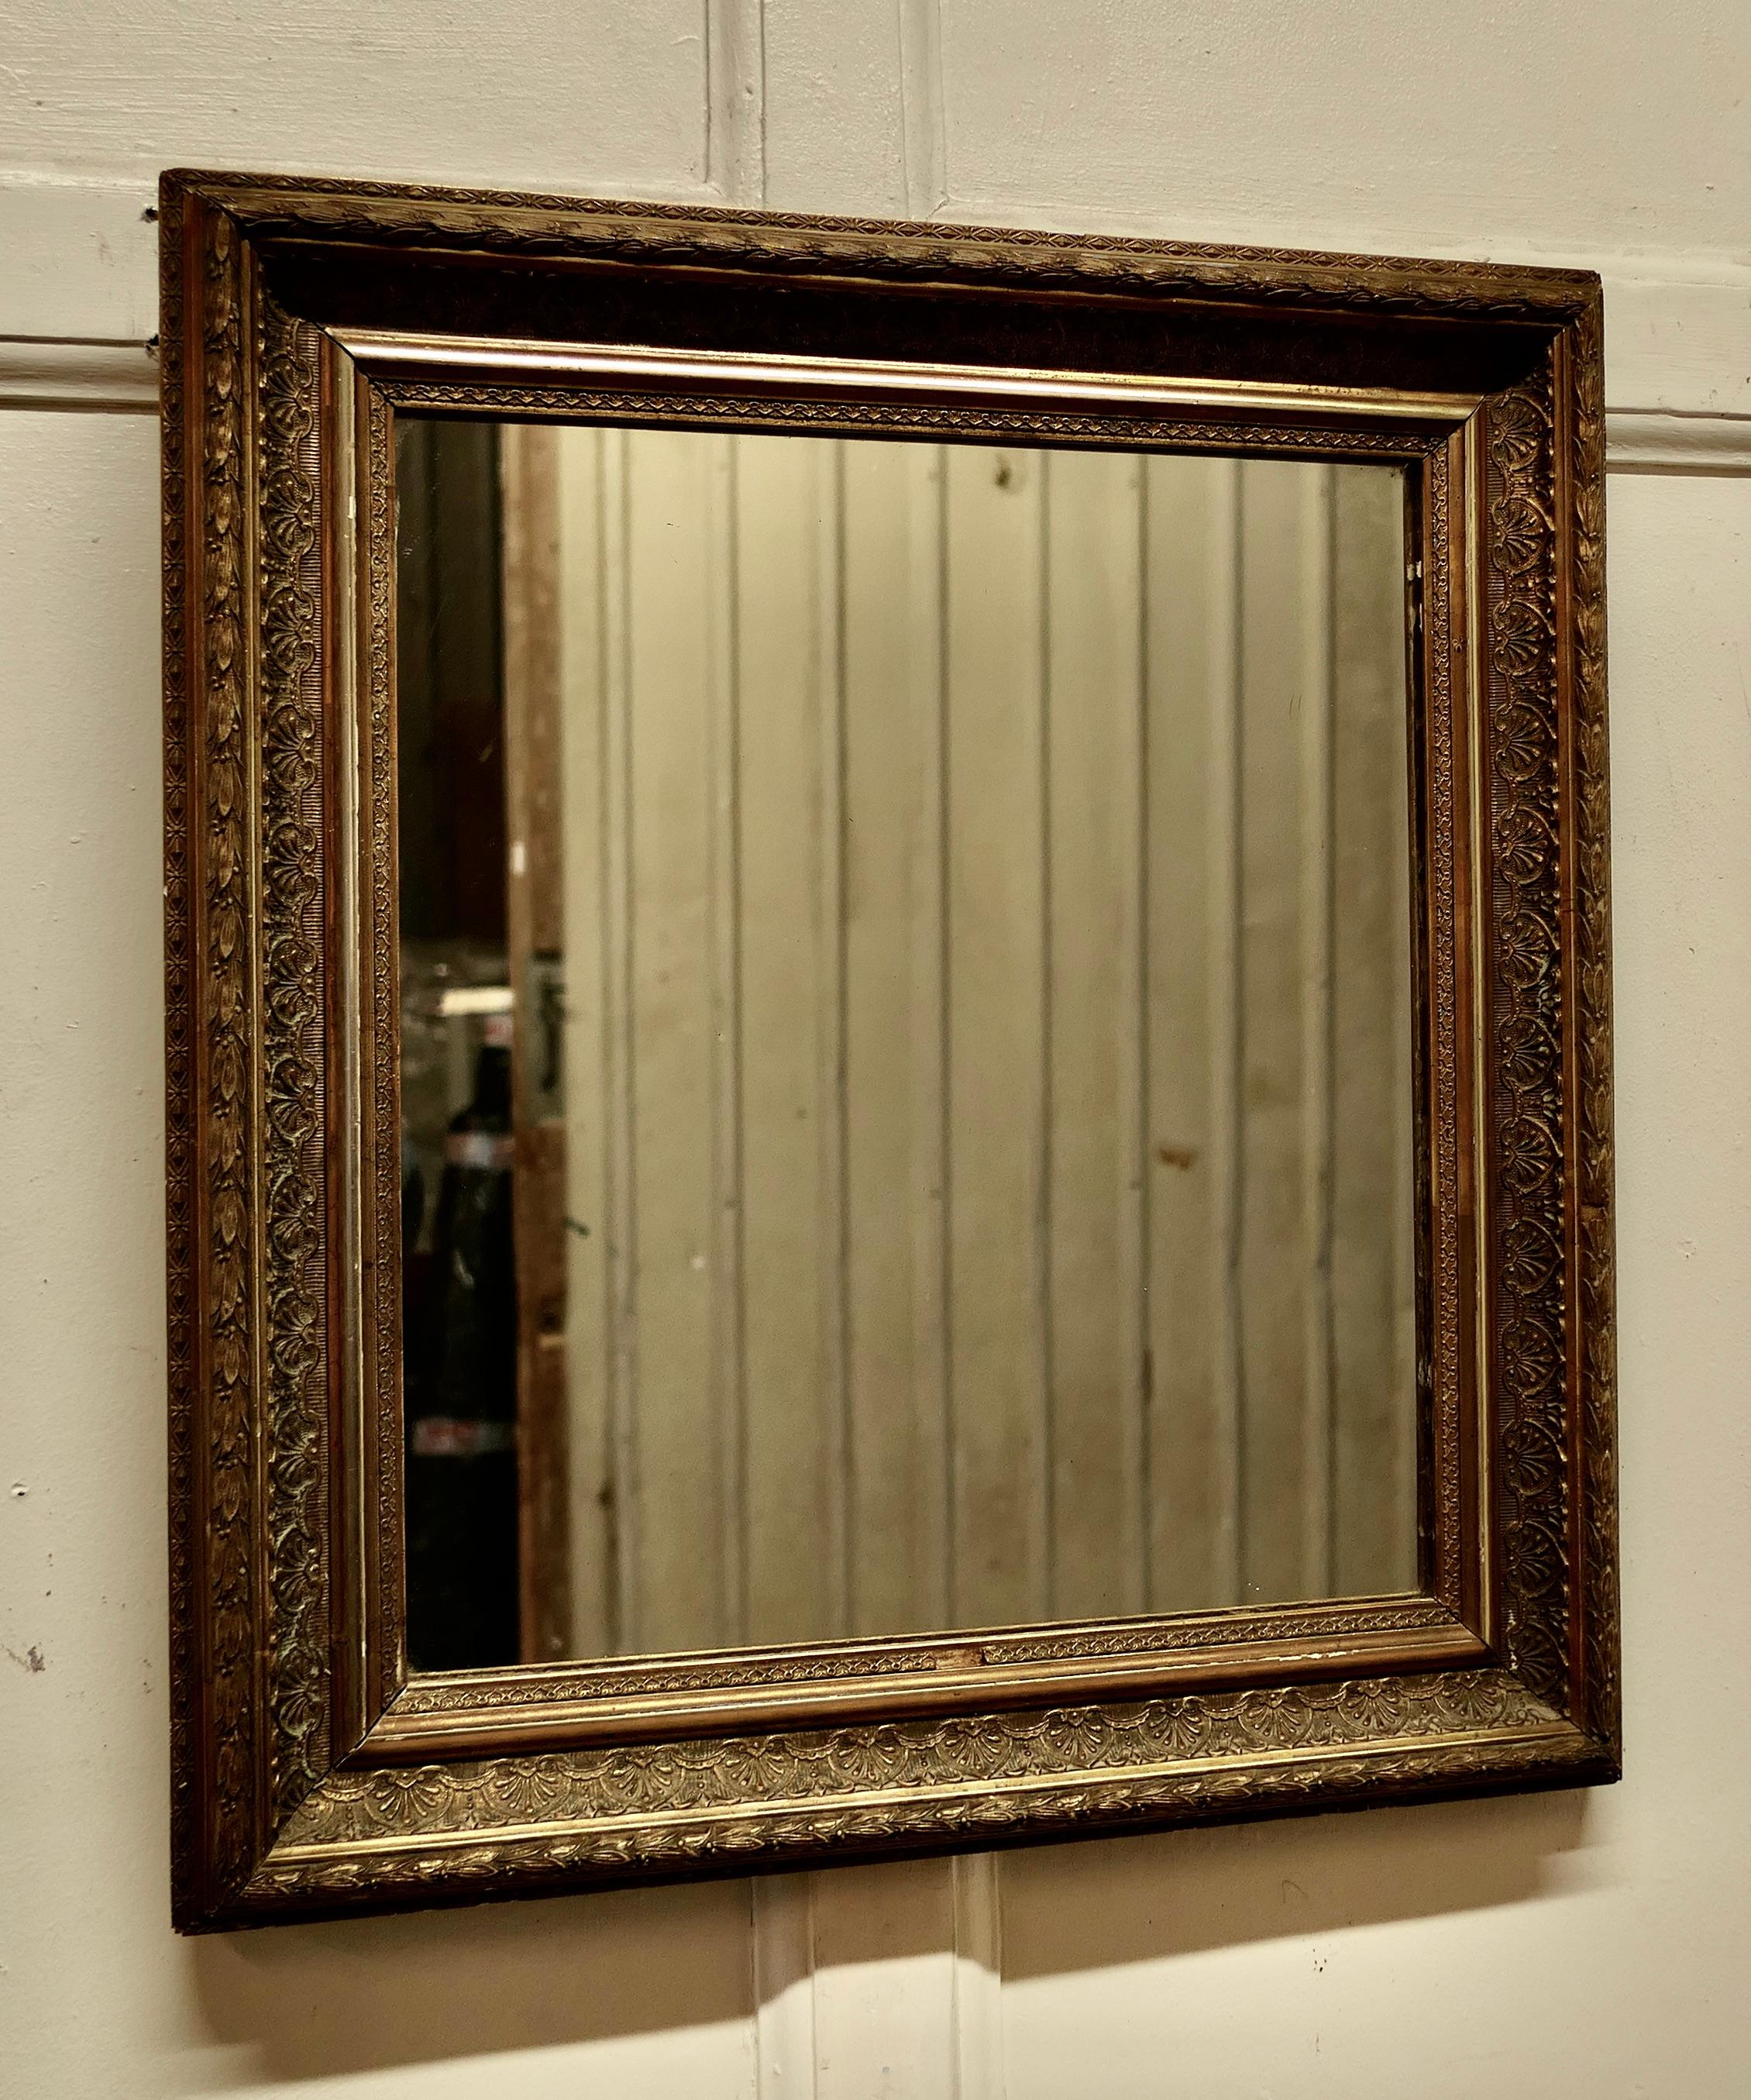 Ancien miroir rectangulaire doré

Le miroir a un beau cadre doré décoratif assombri par l'âge, il est presque carré.
Le miroir est en bon état Vintage By, il y a une perte mineure au bas du cadre.
Une belle pièce
Le miroir mesure 21 x 19 pouces et 3